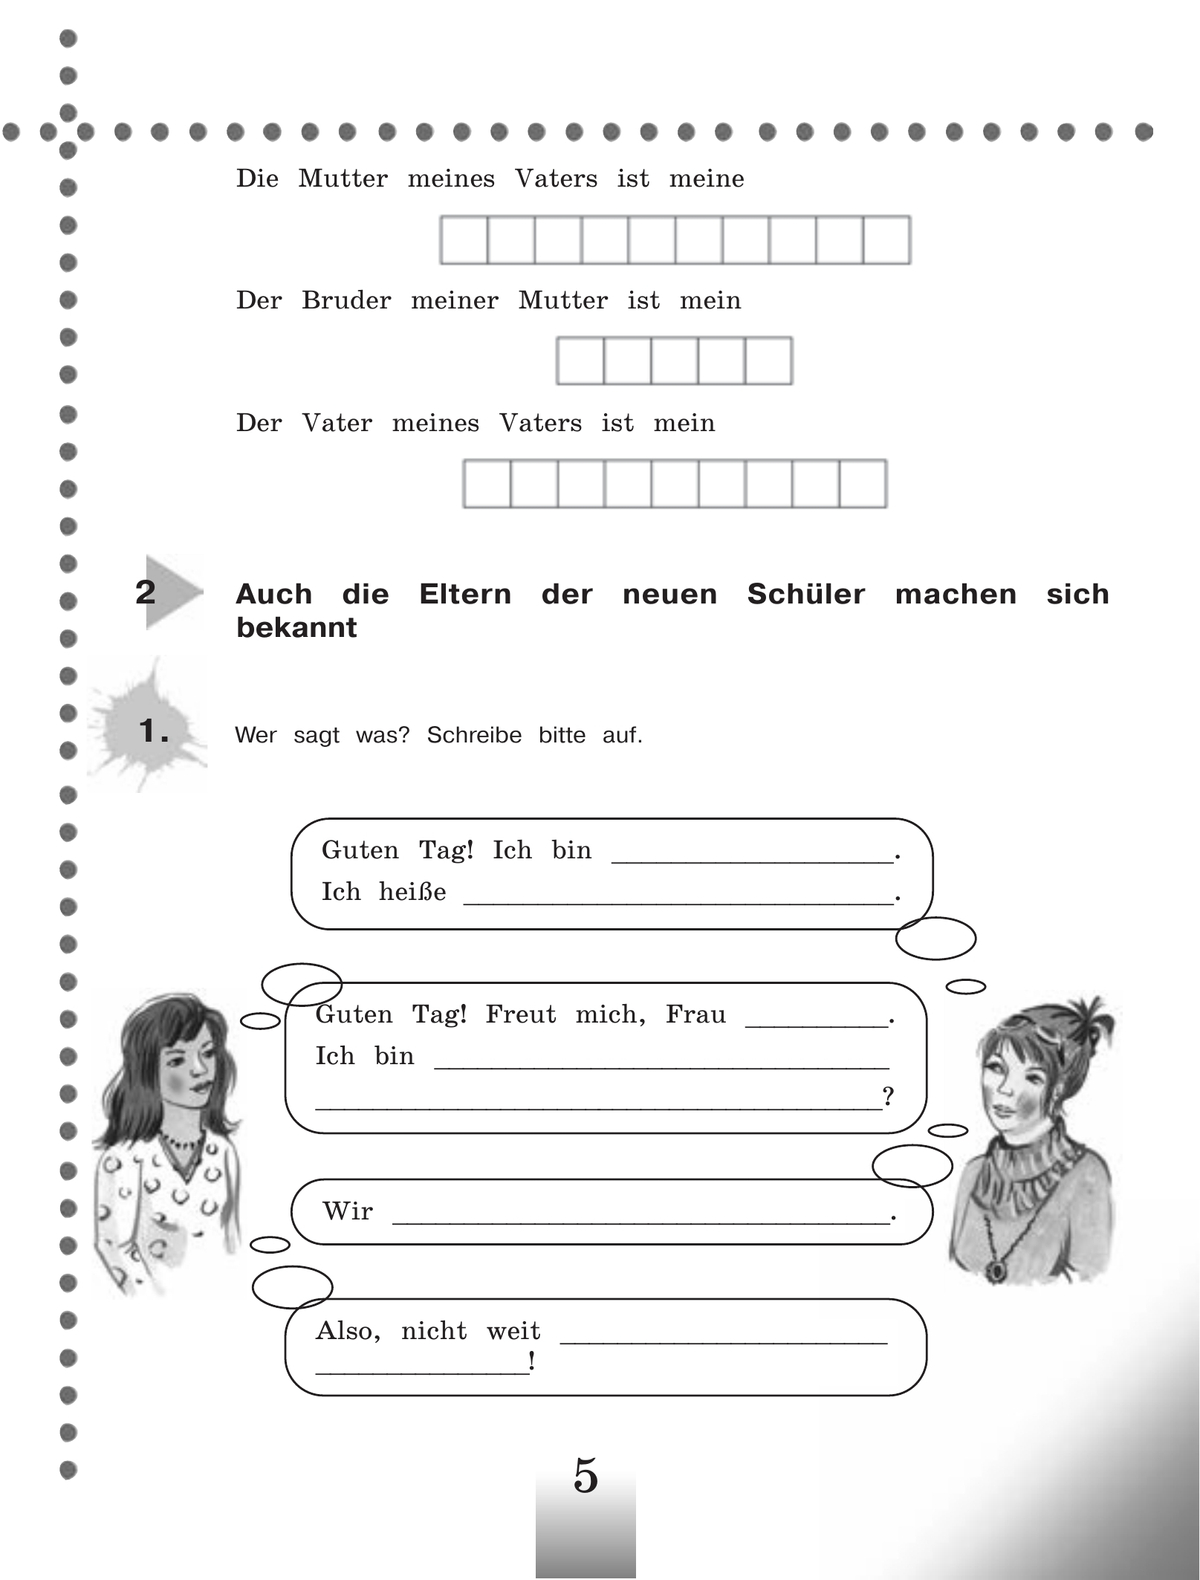 Немецкий язык 5 класс 2 часть тетрадь